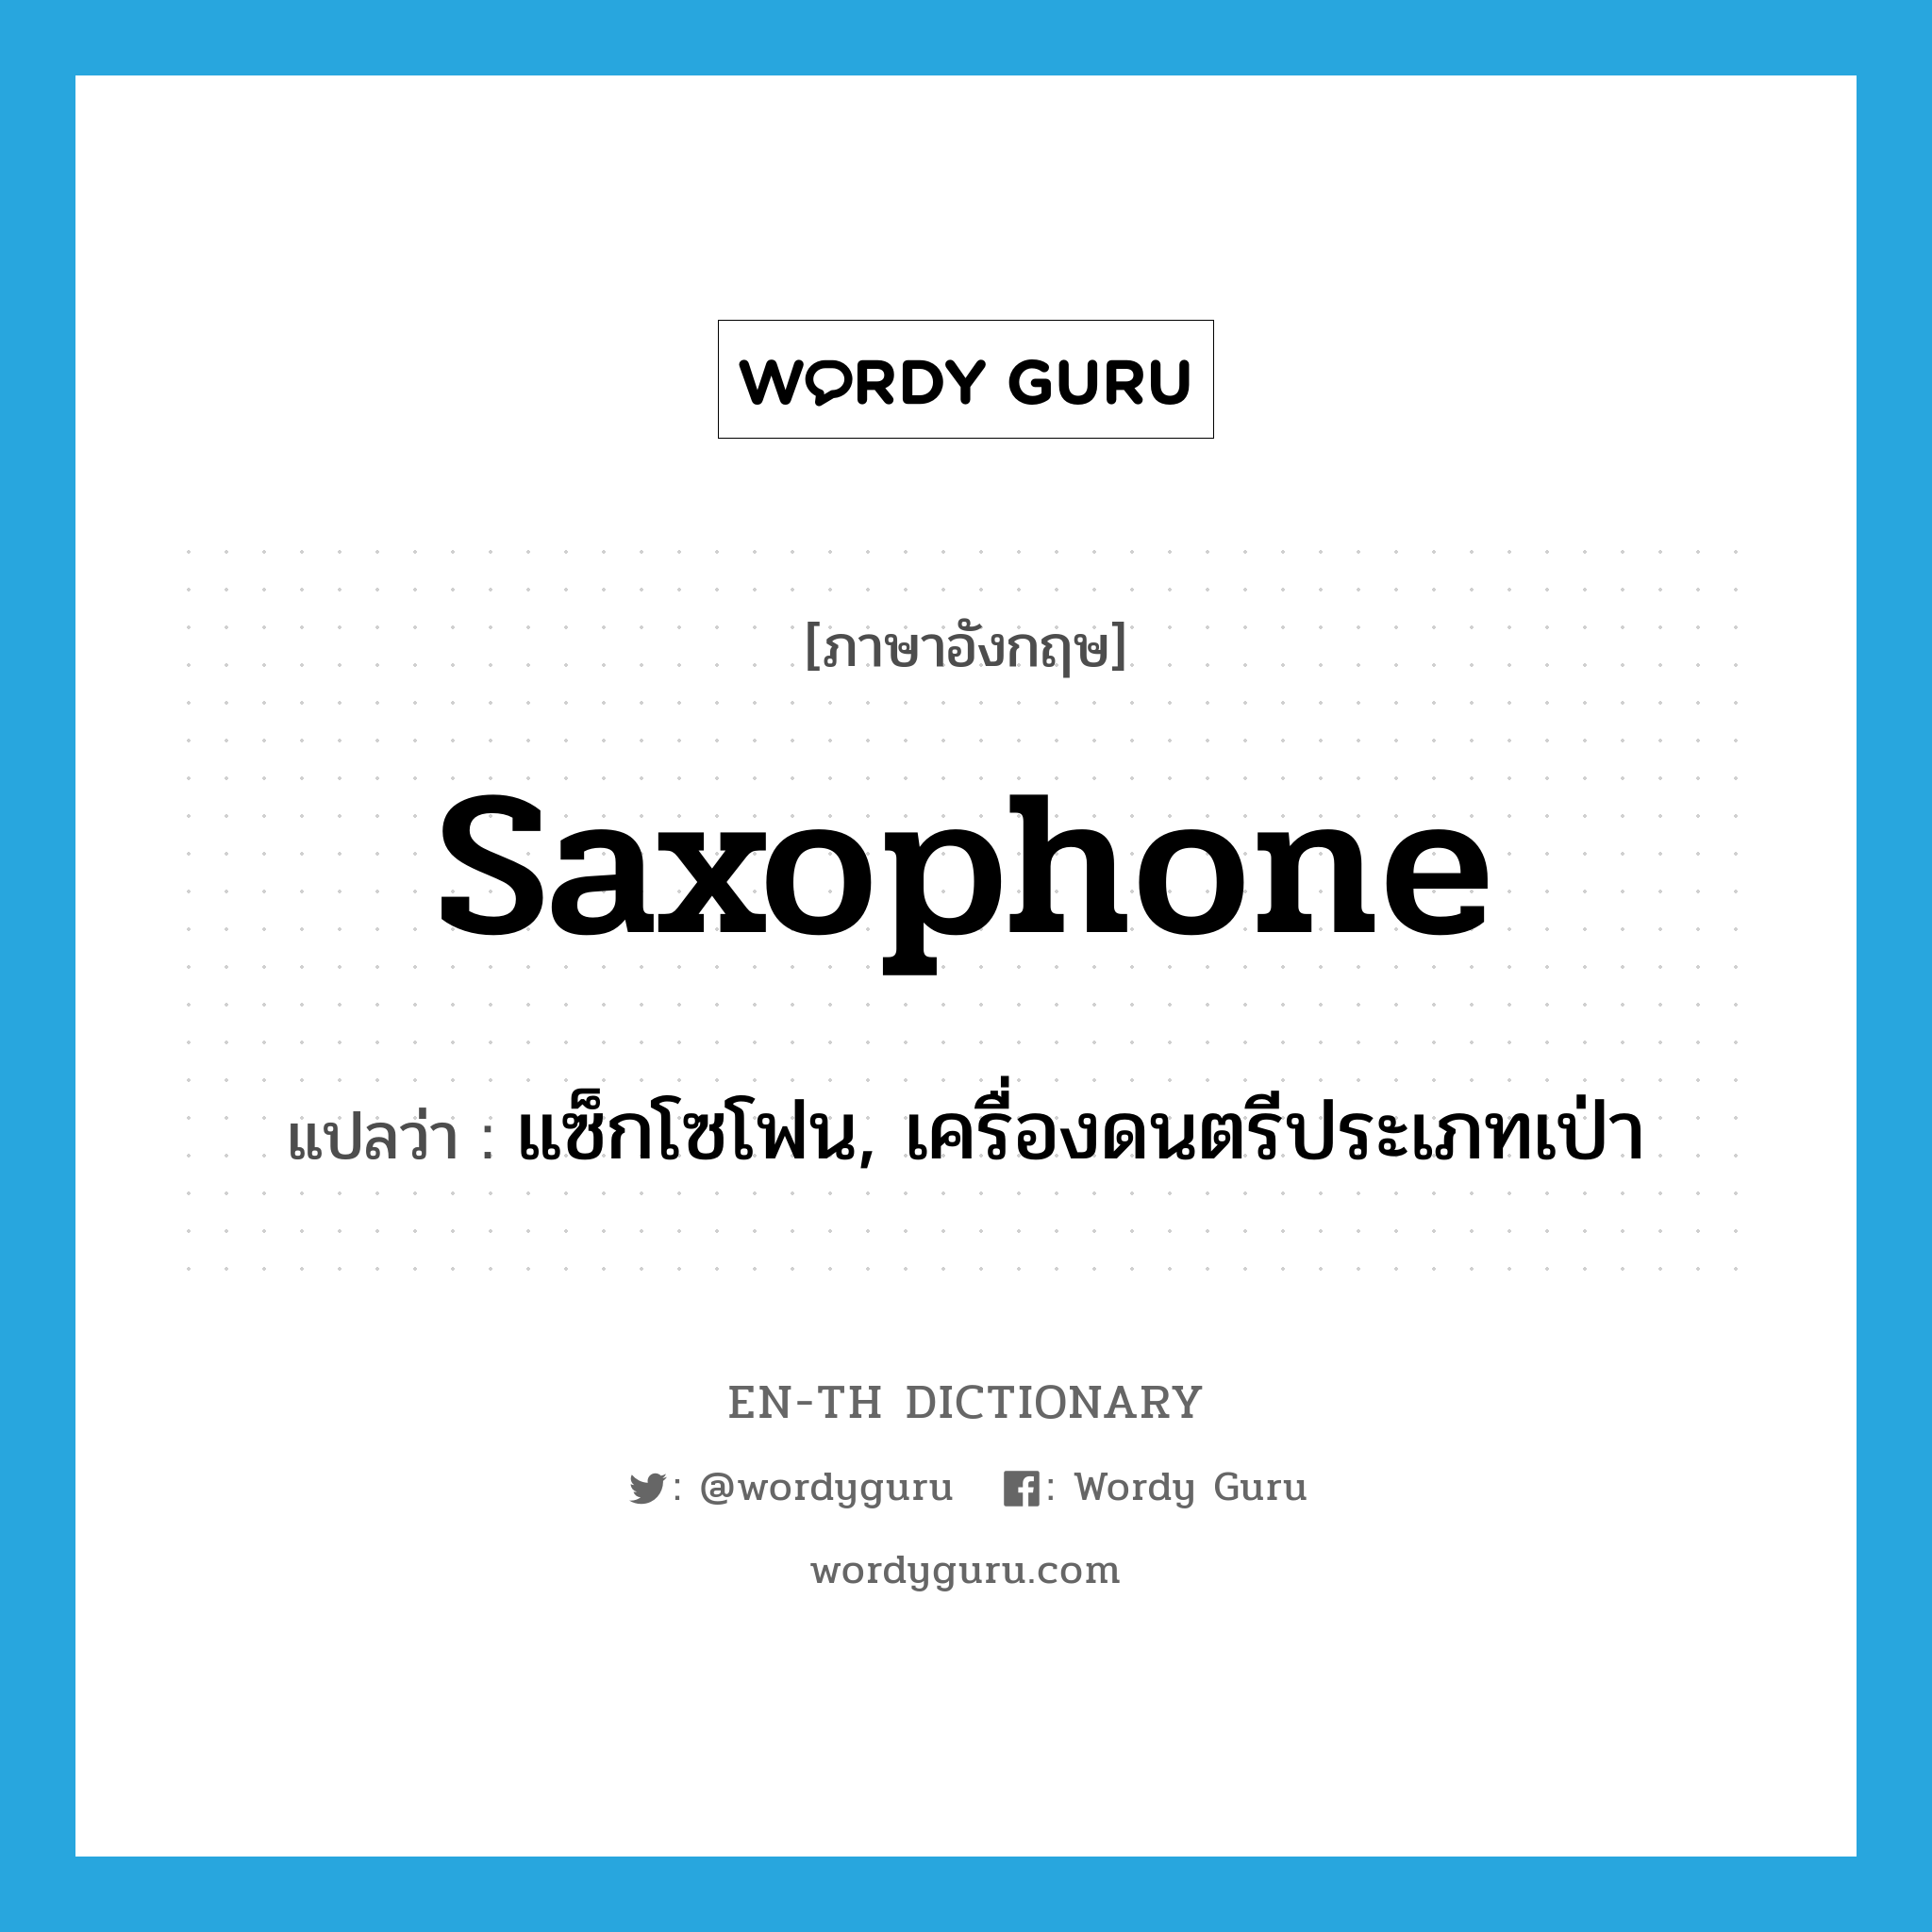 แซ็กโซโฟน, เครื่องดนตรีประเภทเป่า ภาษาอังกฤษ?, คำศัพท์ภาษาอังกฤษ แซ็กโซโฟน, เครื่องดนตรีประเภทเป่า แปลว่า saxophone ประเภท N หมวด N